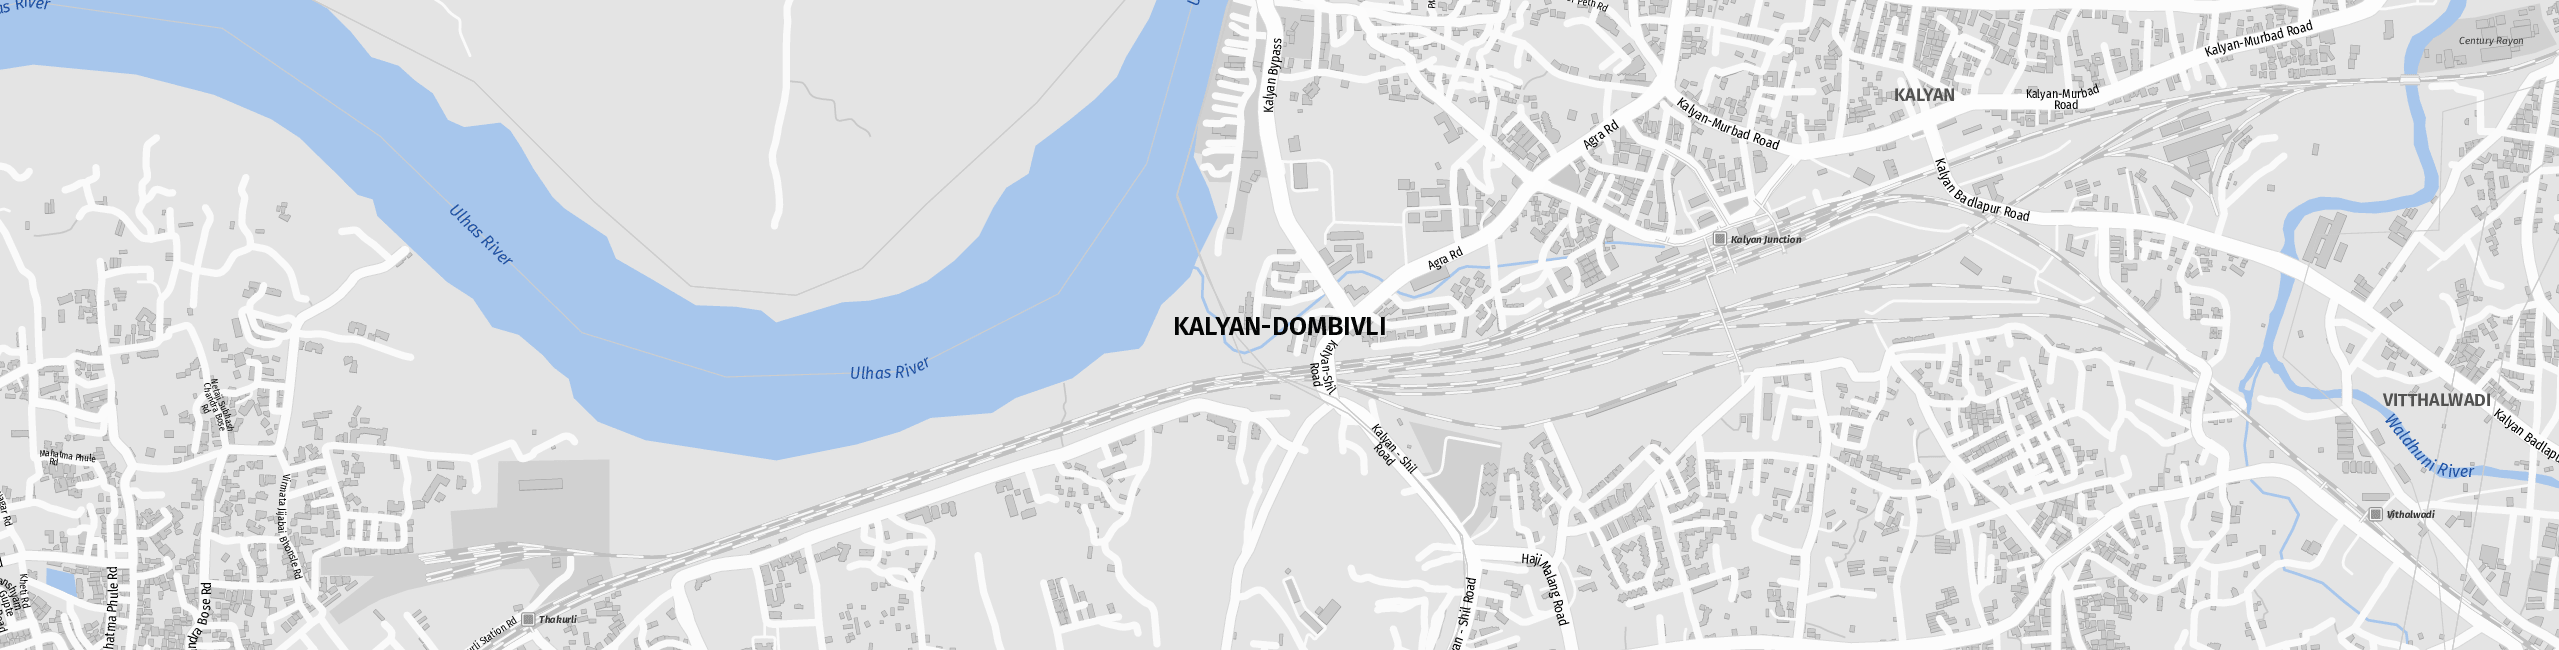 Stadtplan Kalyan-Dombivli zum Downloaden.